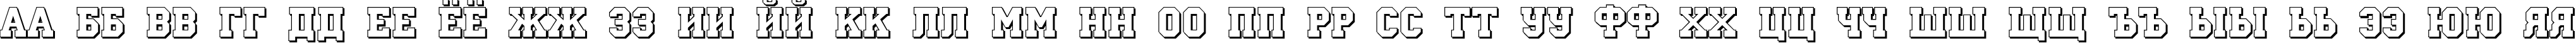 Пример написания русского алфавита шрифтом a_CampusOtlSh Bold